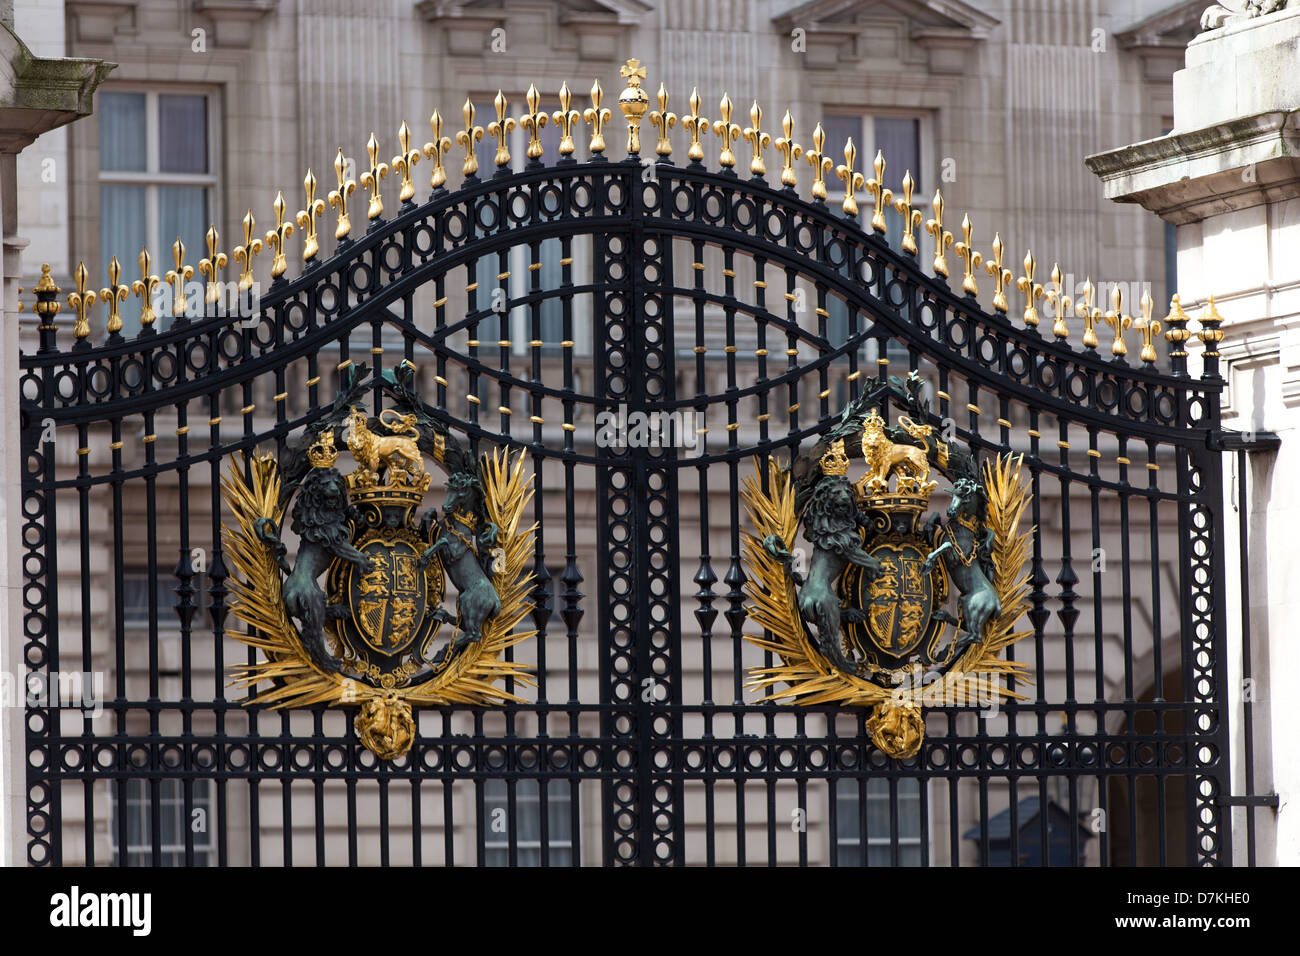 Buckingham Palace main gate, London, United Kingdom Stock Photo